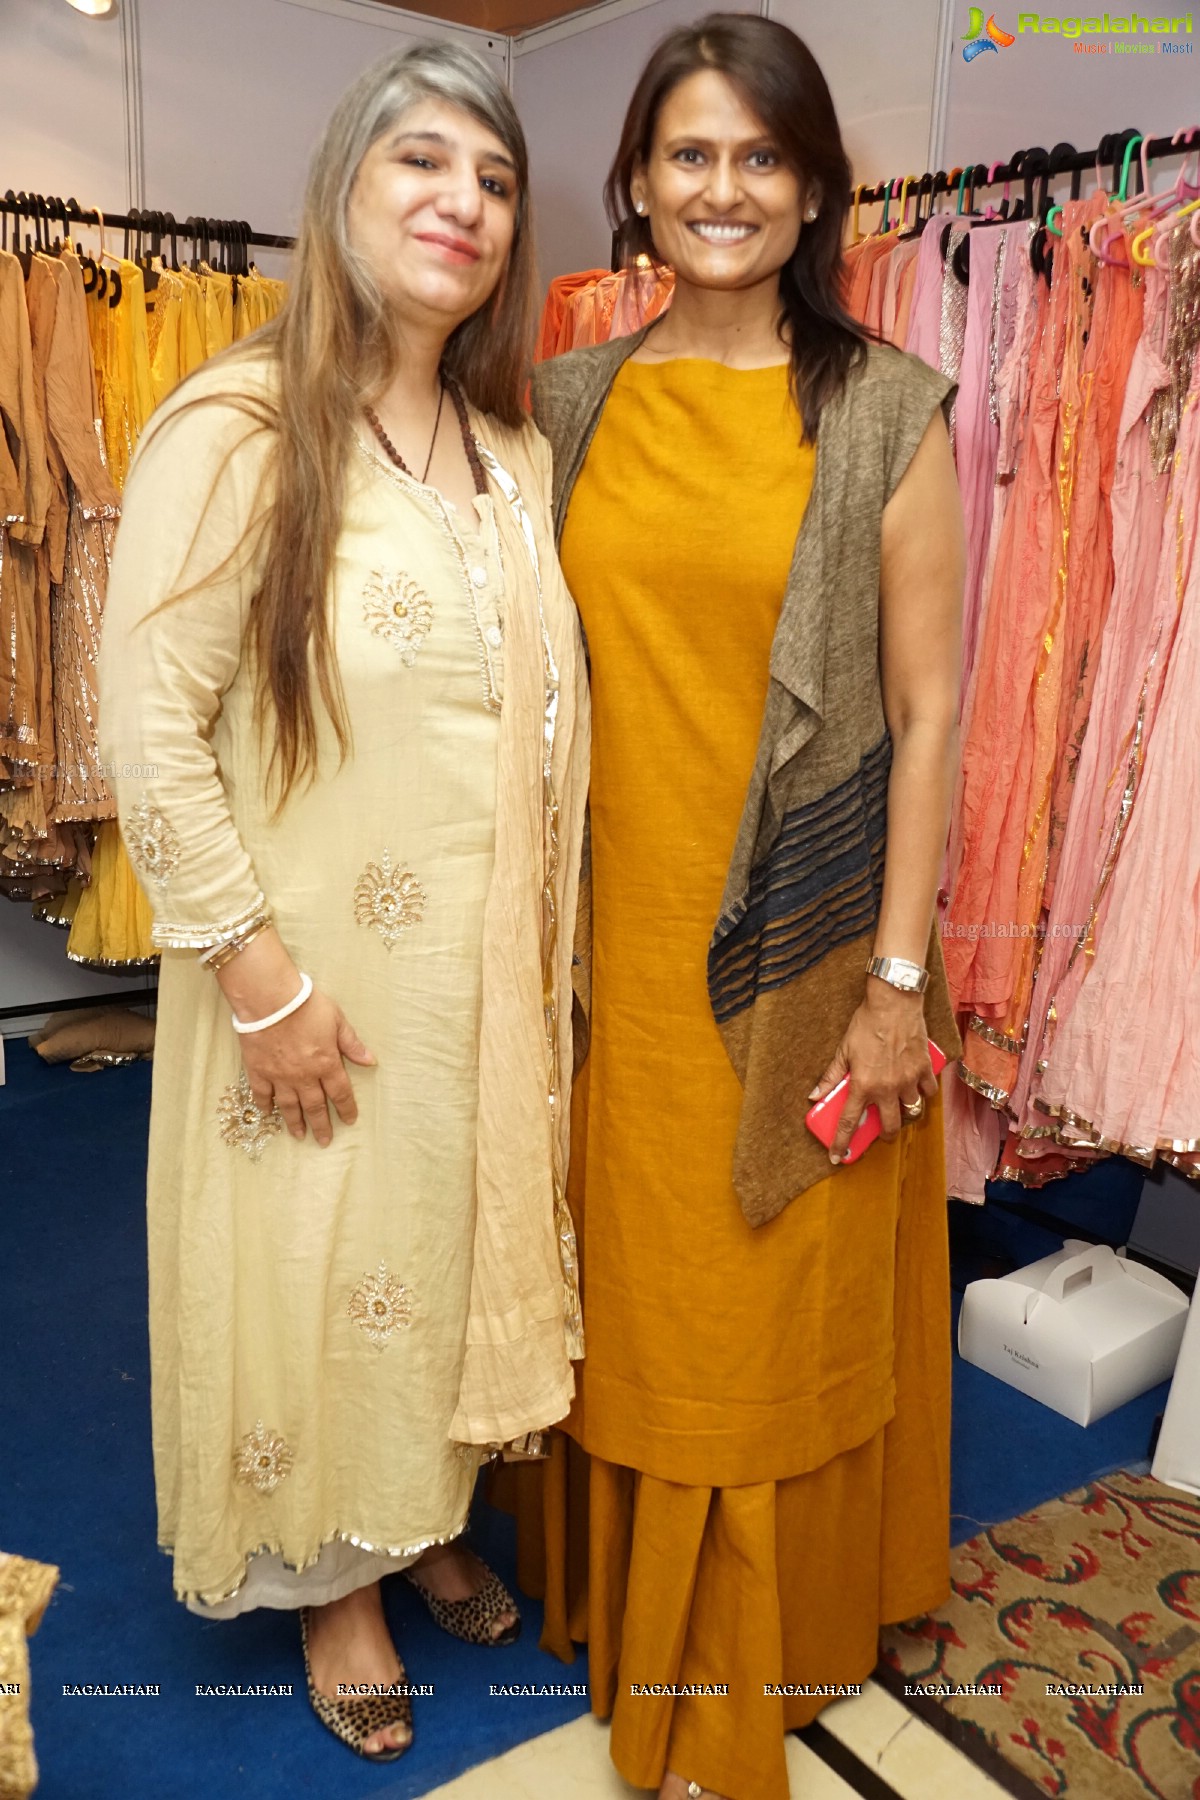 Fashion Yatra Exhibition at Taj Krishna